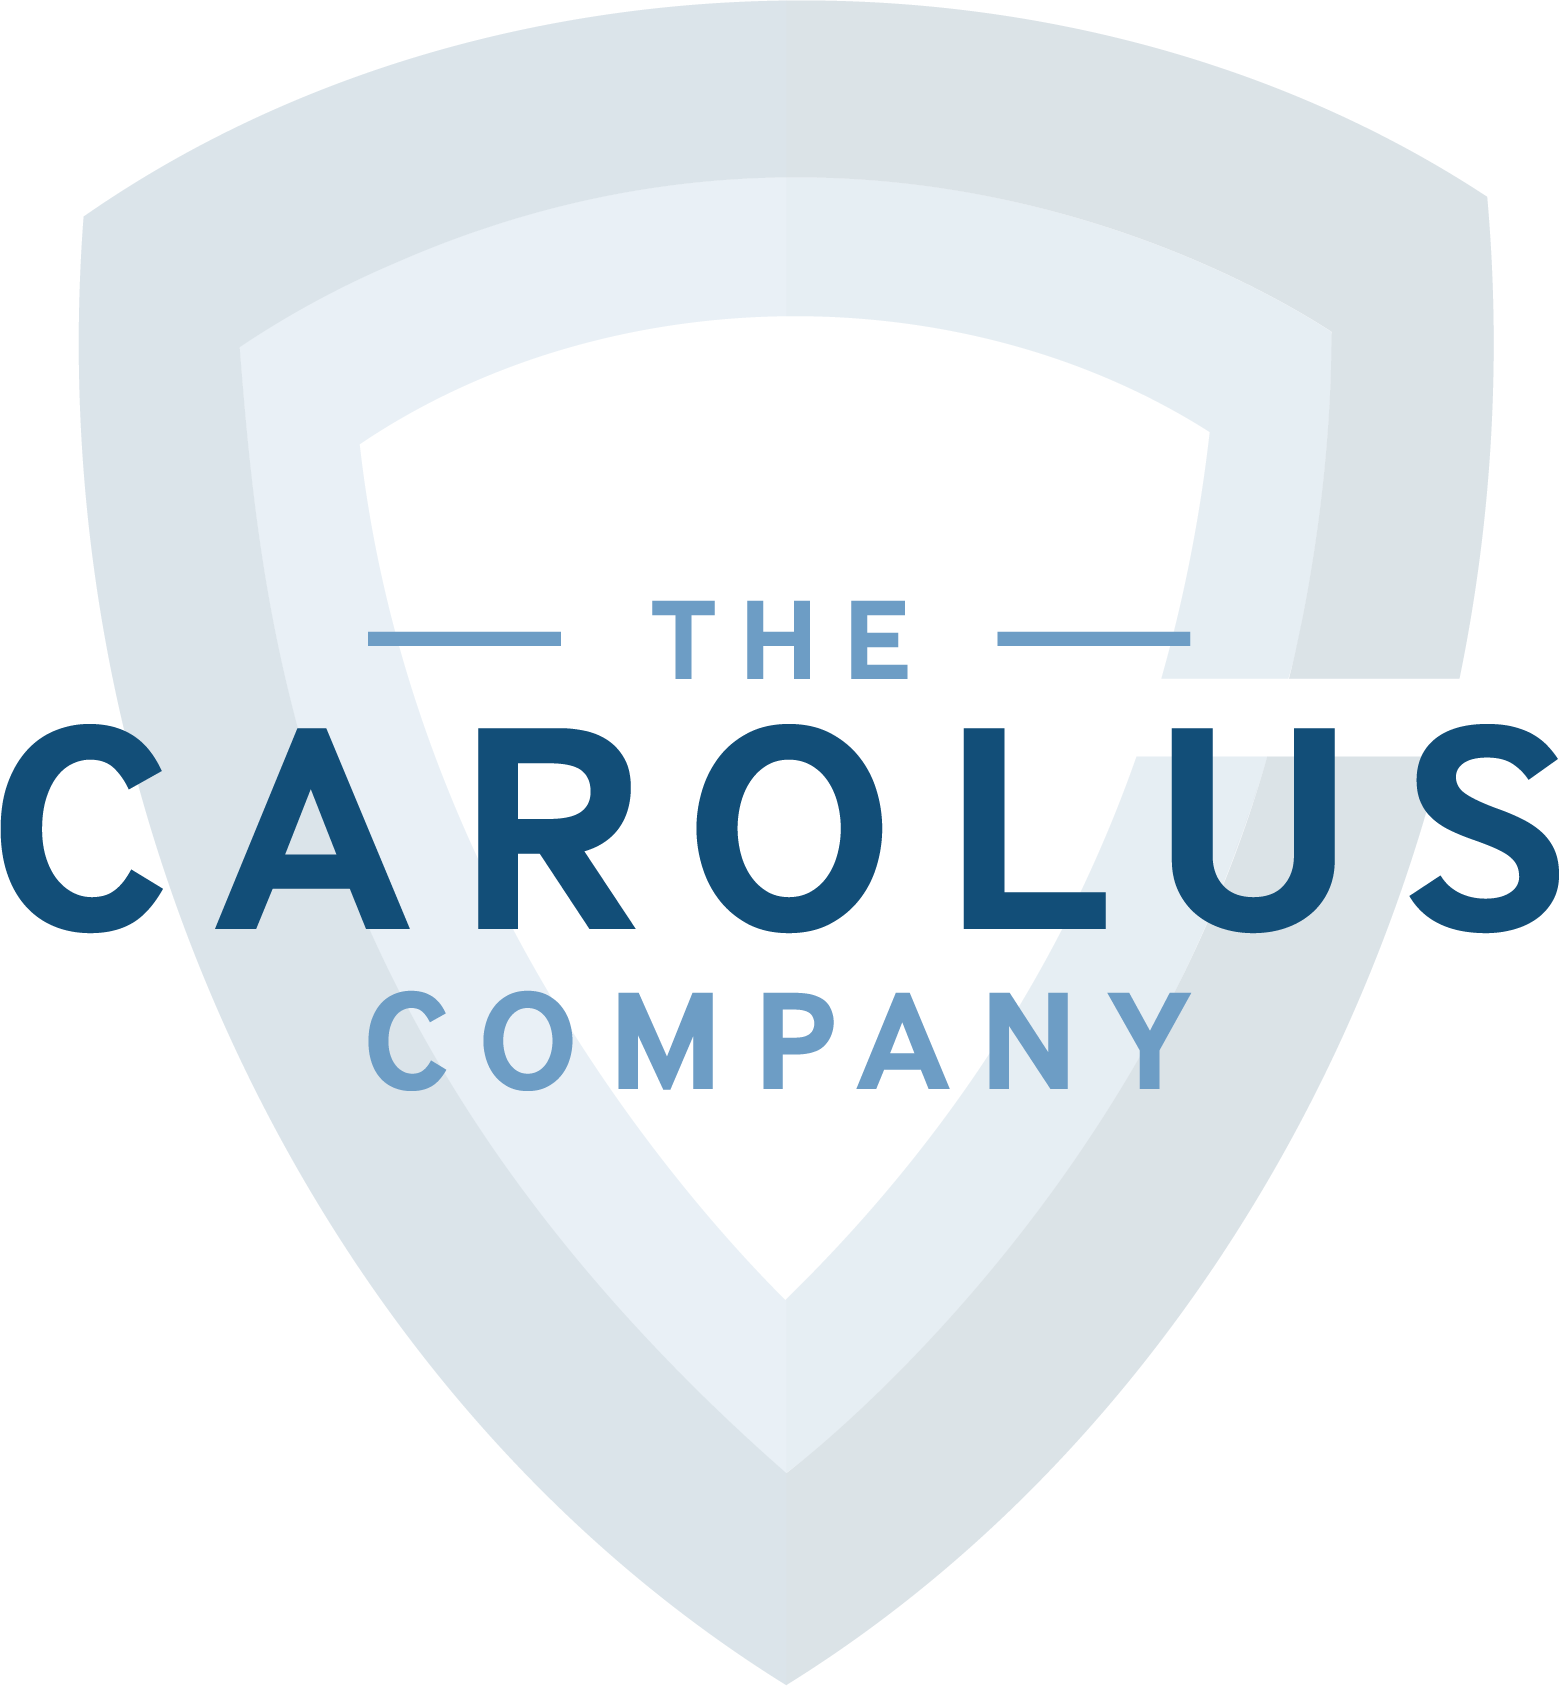 Carolus Company